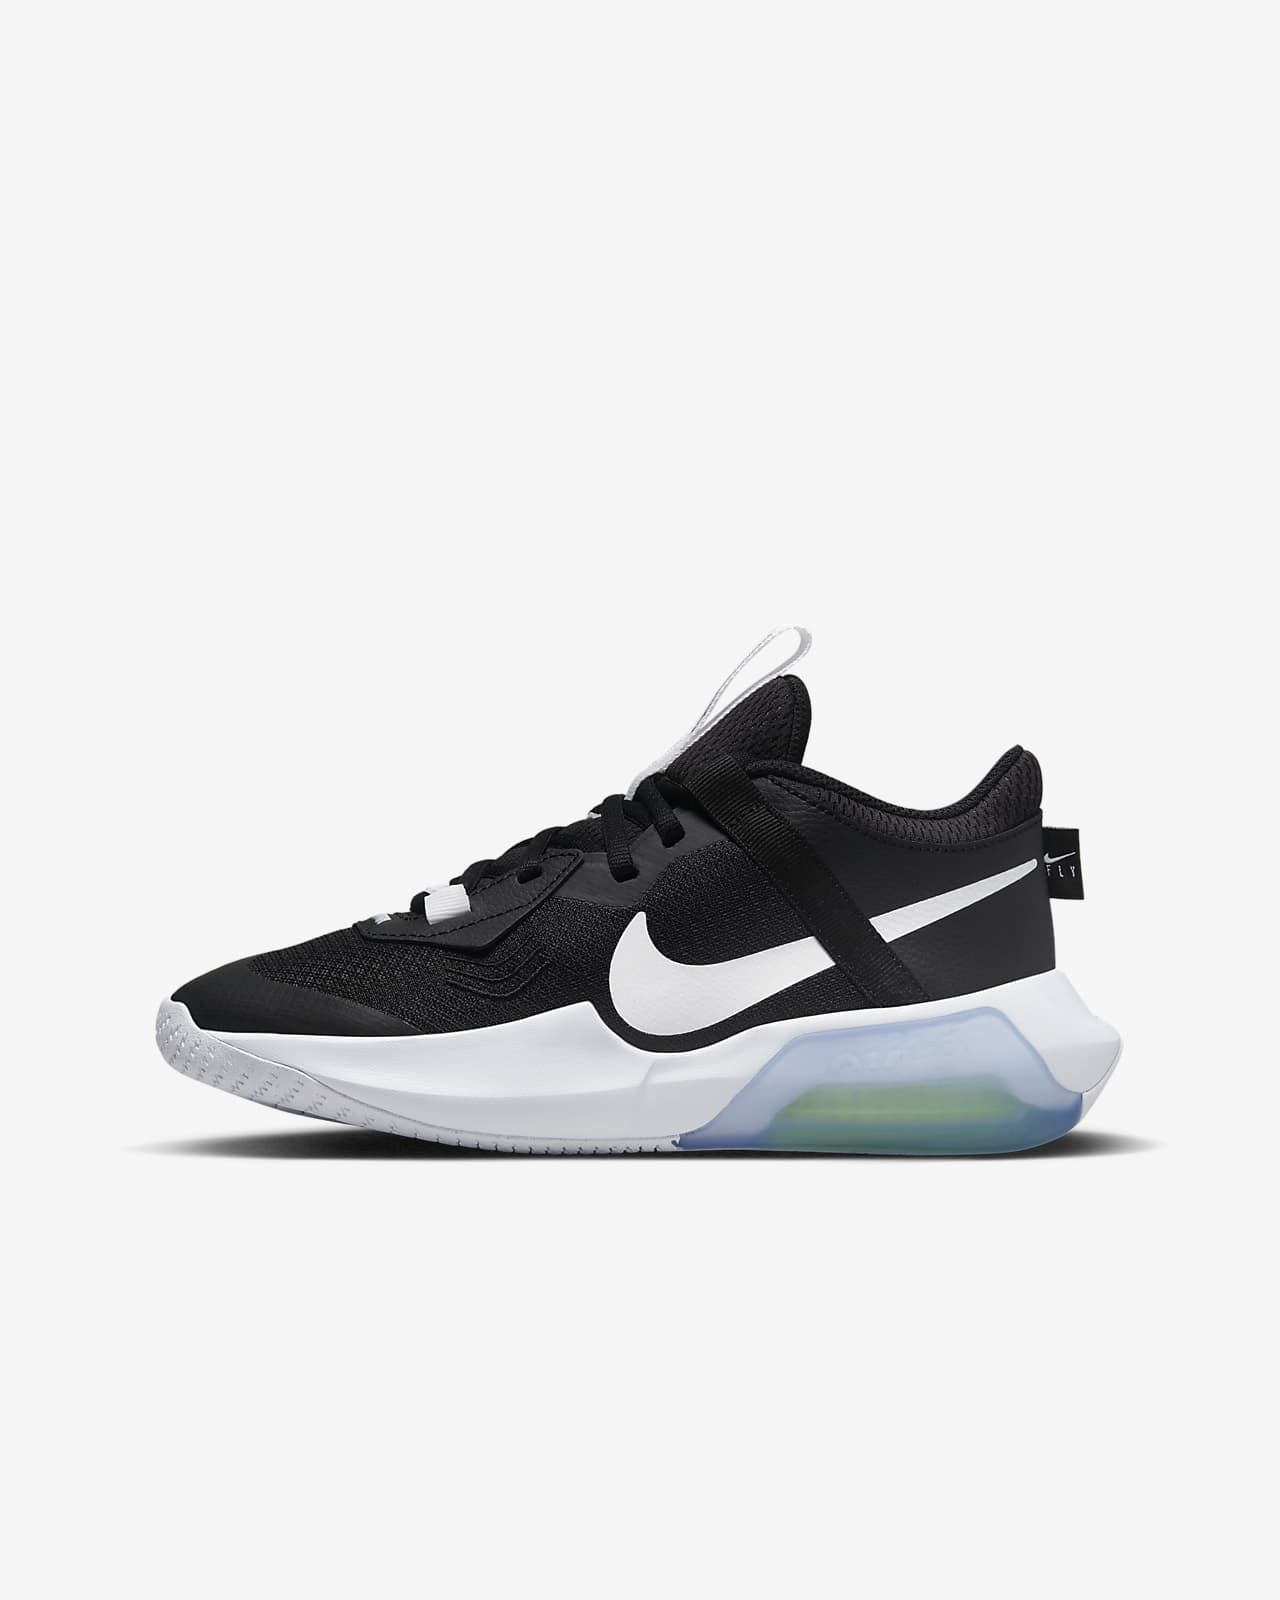 Proscrito he equivocado Cercanamente Nike Air Zoom Crossover Zapatillas de baloncesto - Niño/a. Nike ES